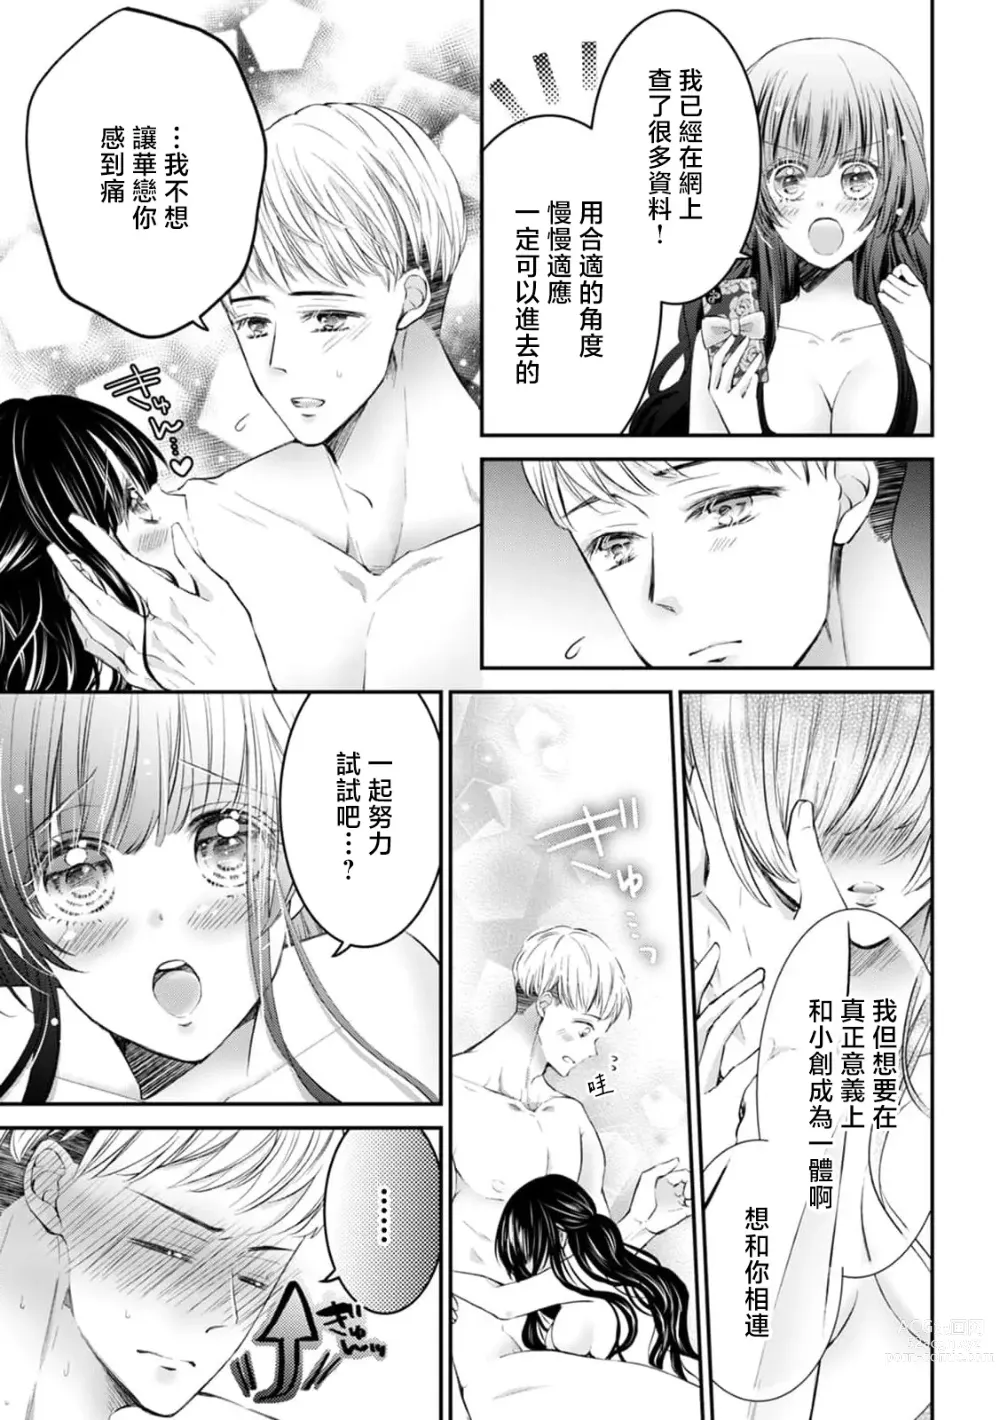 Page 4 of manga 想和SIZE超大的男友合为一体… 连最深处都要幸福满满！